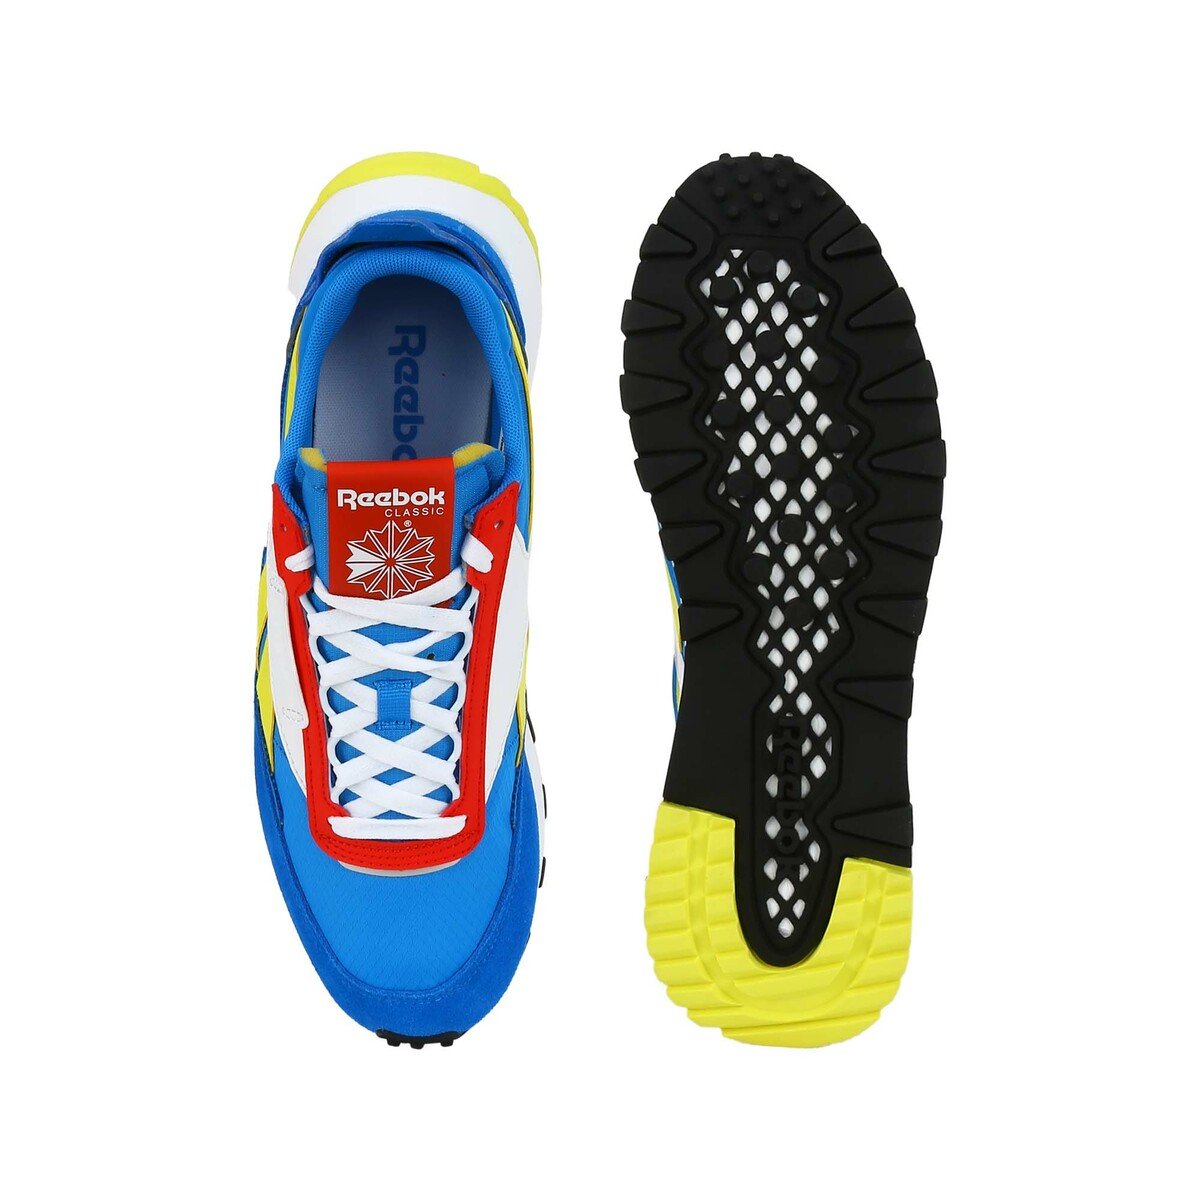 Reebok UniSex Sport Shoe 7429 DynaBlue/HorBlue/InsRed, 36